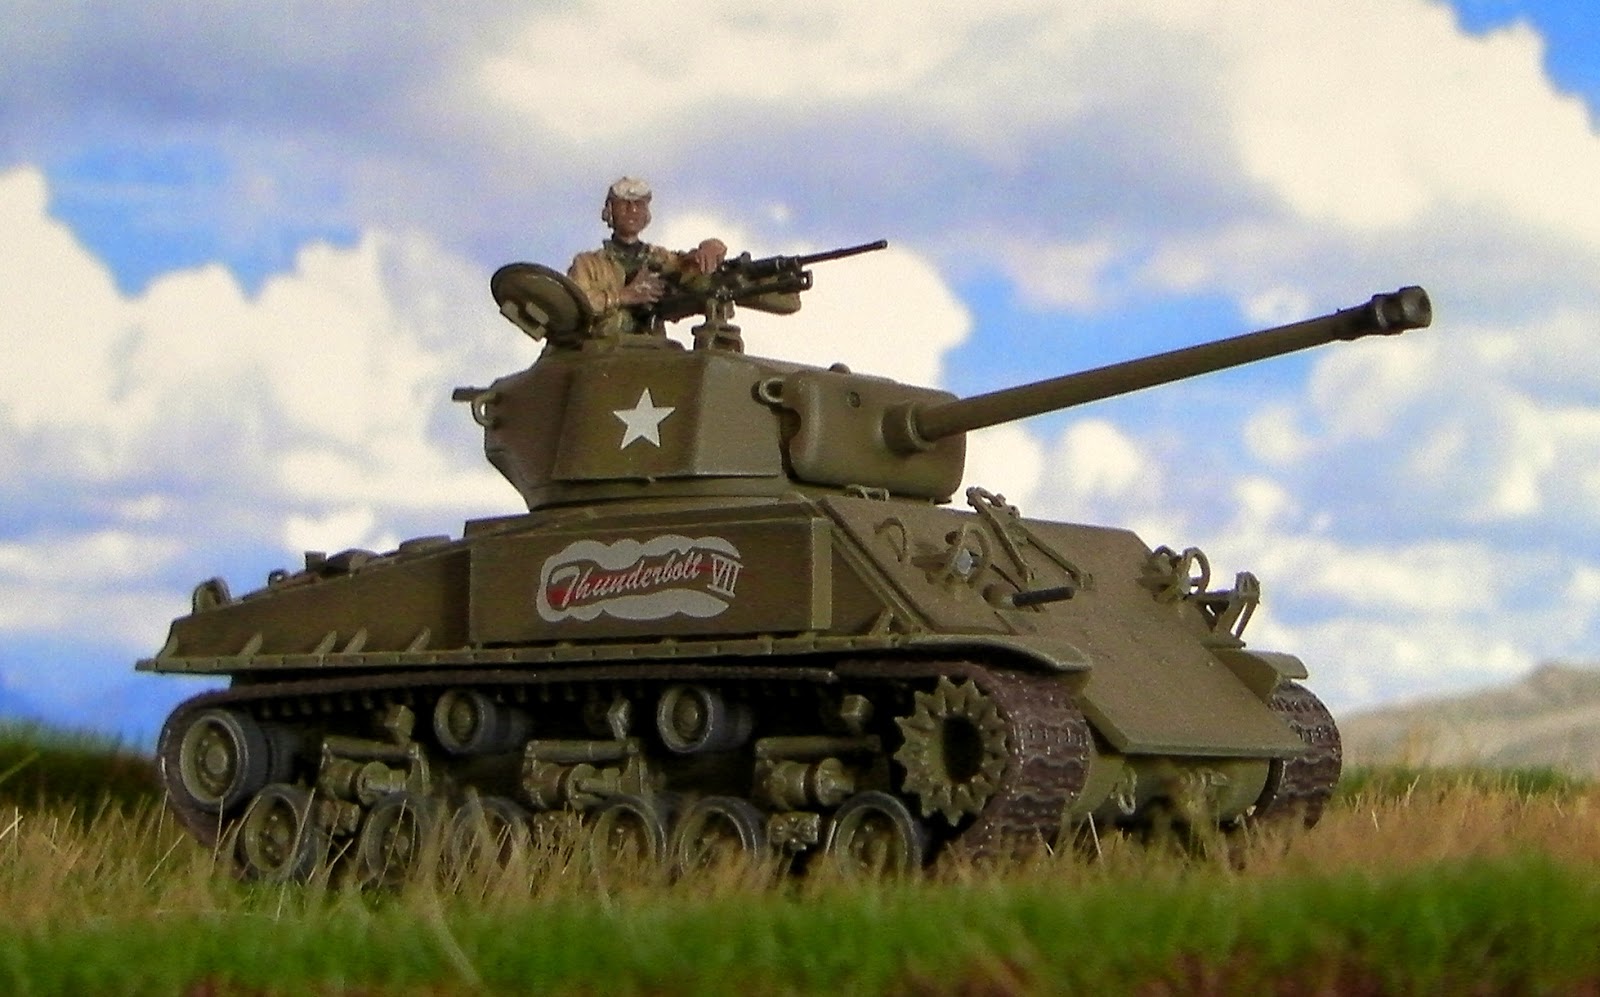 M4A3E8 Sherman Tank "Thunderbolt VII" .